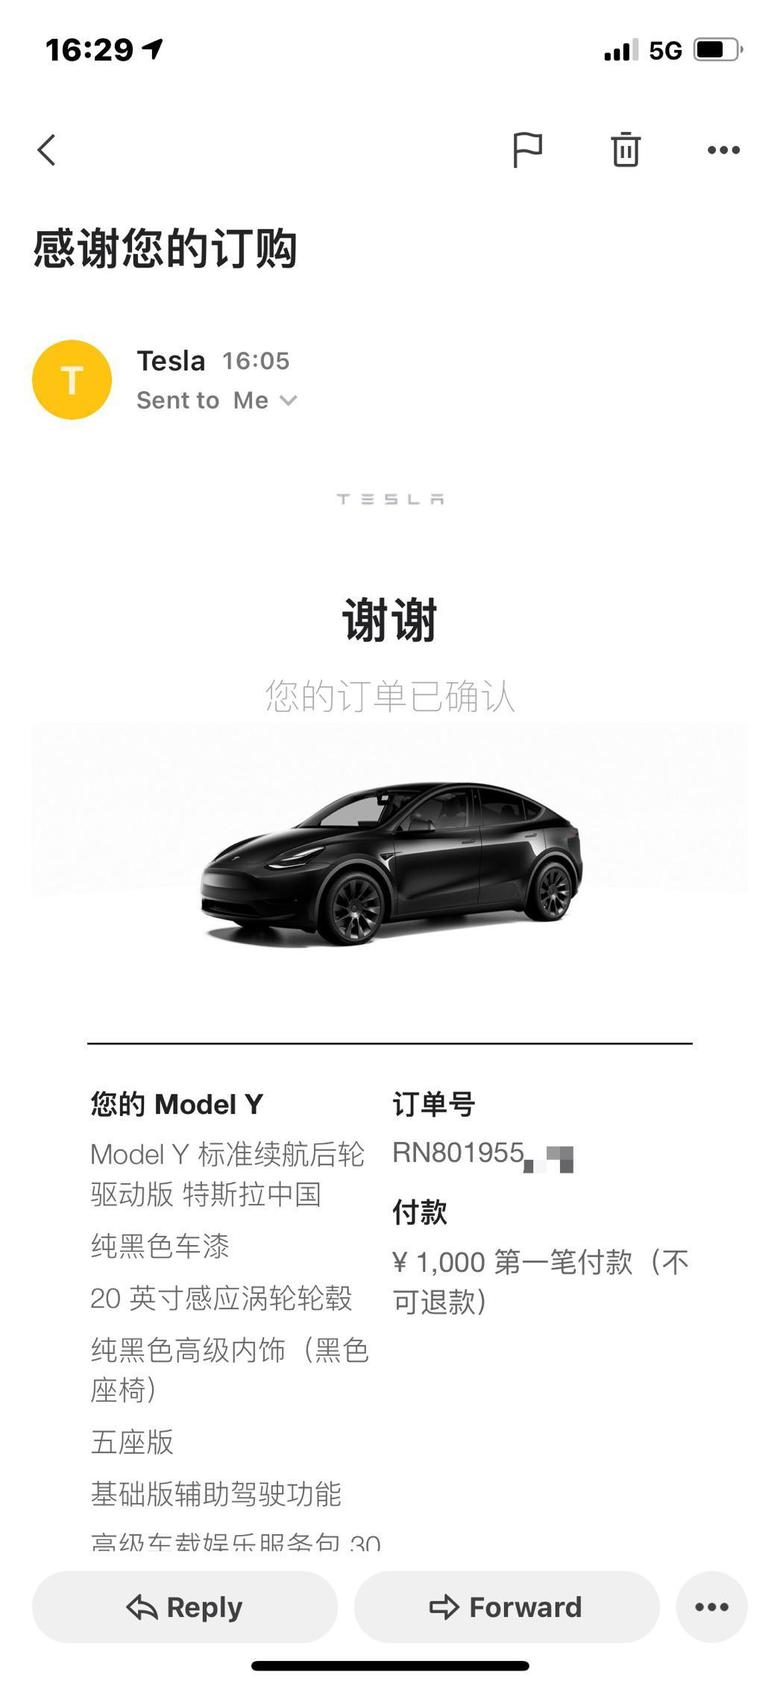 model y 今天下单TeslaModelY，人生第一辆车坐标上海，求关照